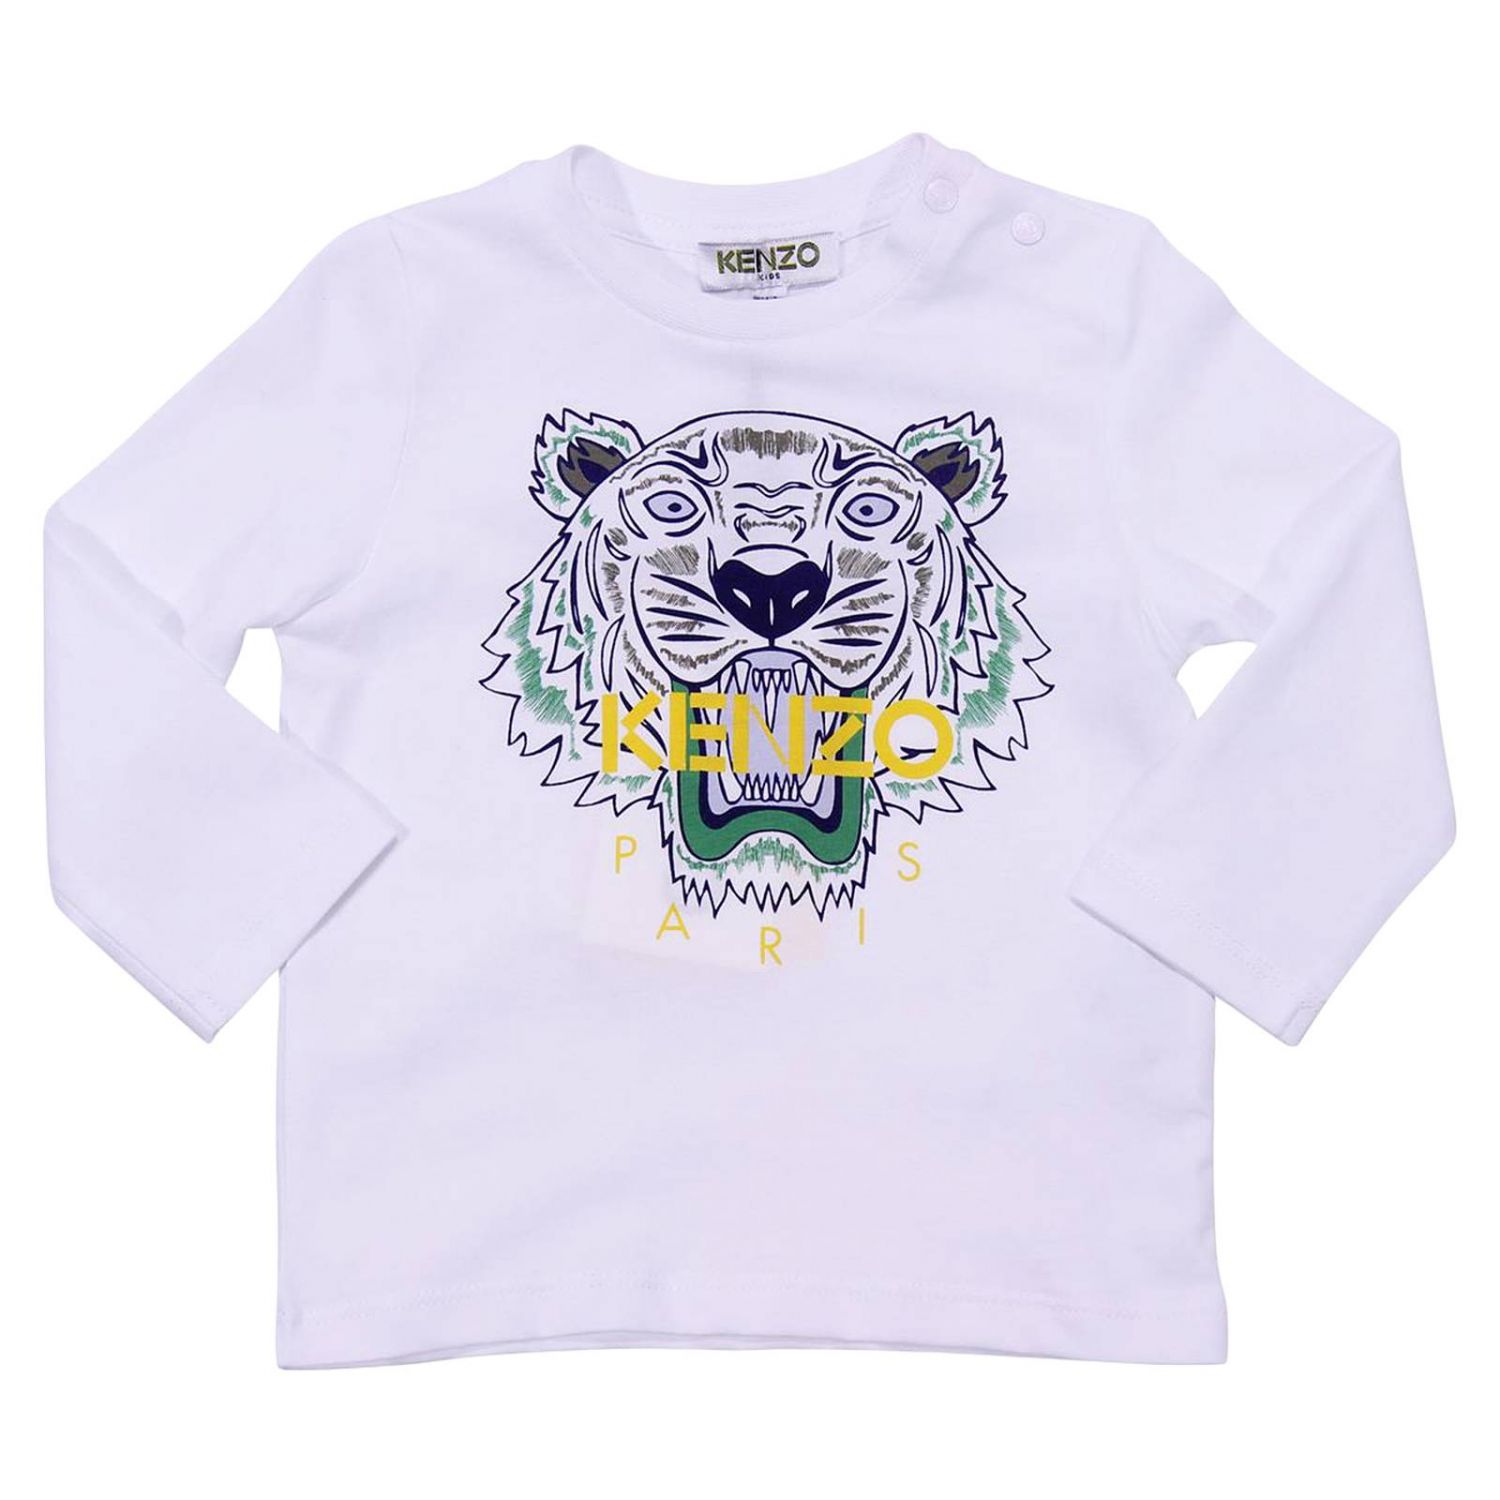 KENZO JUNIOR: T-shirt kids | T-Shirt Kenzo Junior Kids White | T-Shirt ...